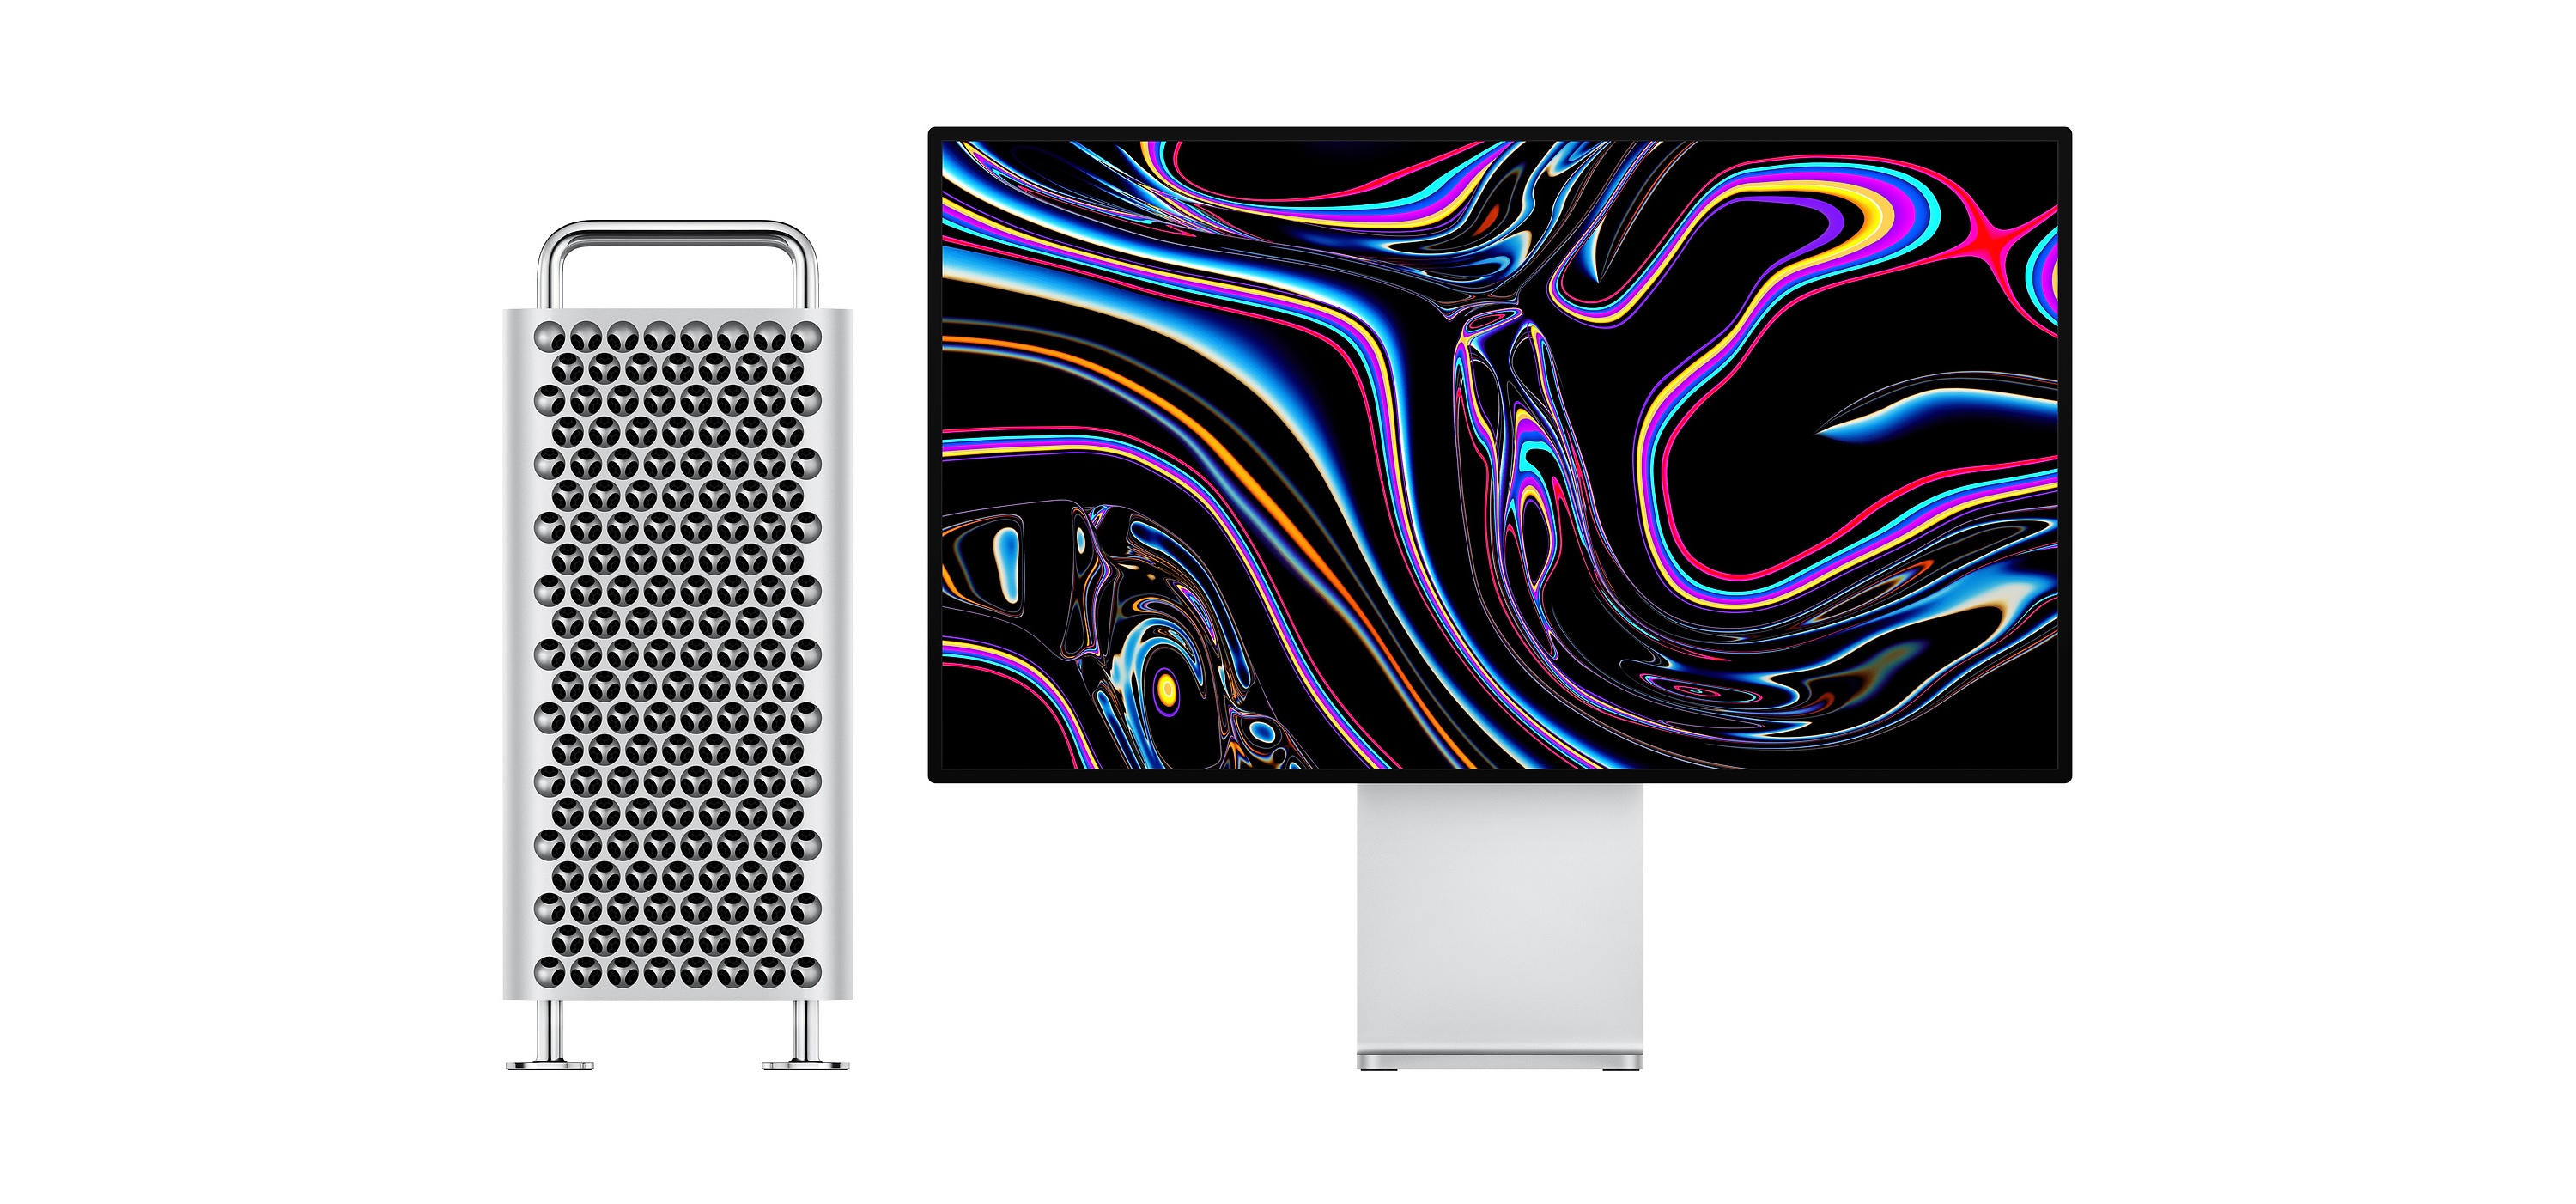 Apple Mac Pro 2019 i Pro Display XDR